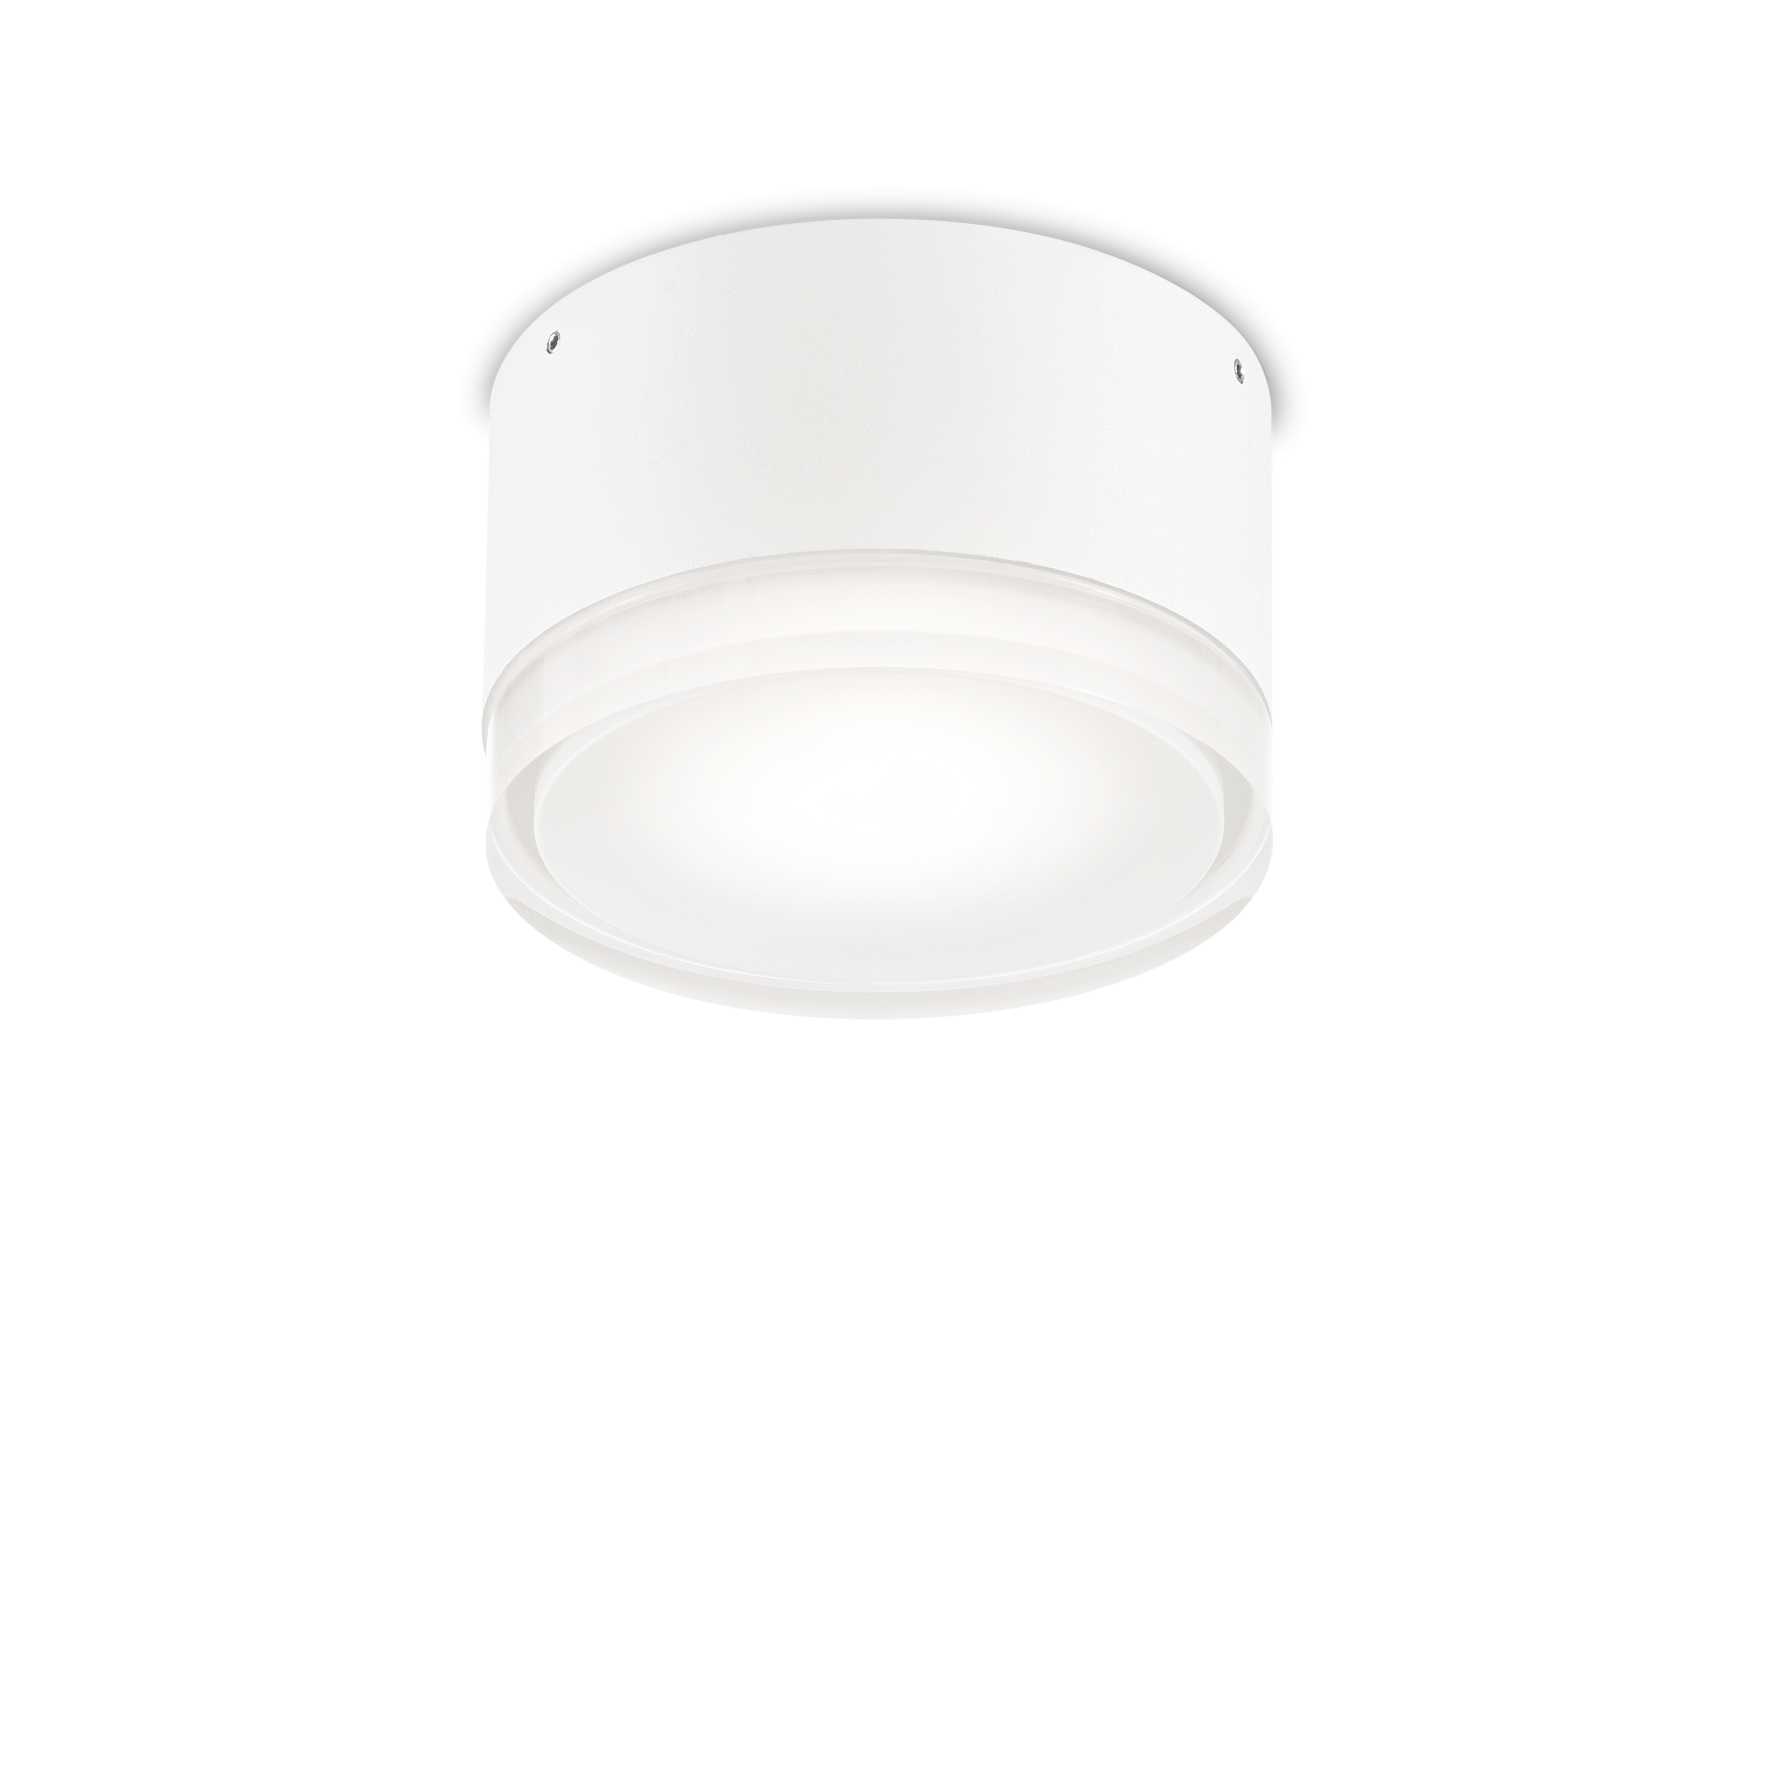 AD hotelska oprema Vanjska stropna lampa Urano pl1 mala- Bijele boje slika proizvoda